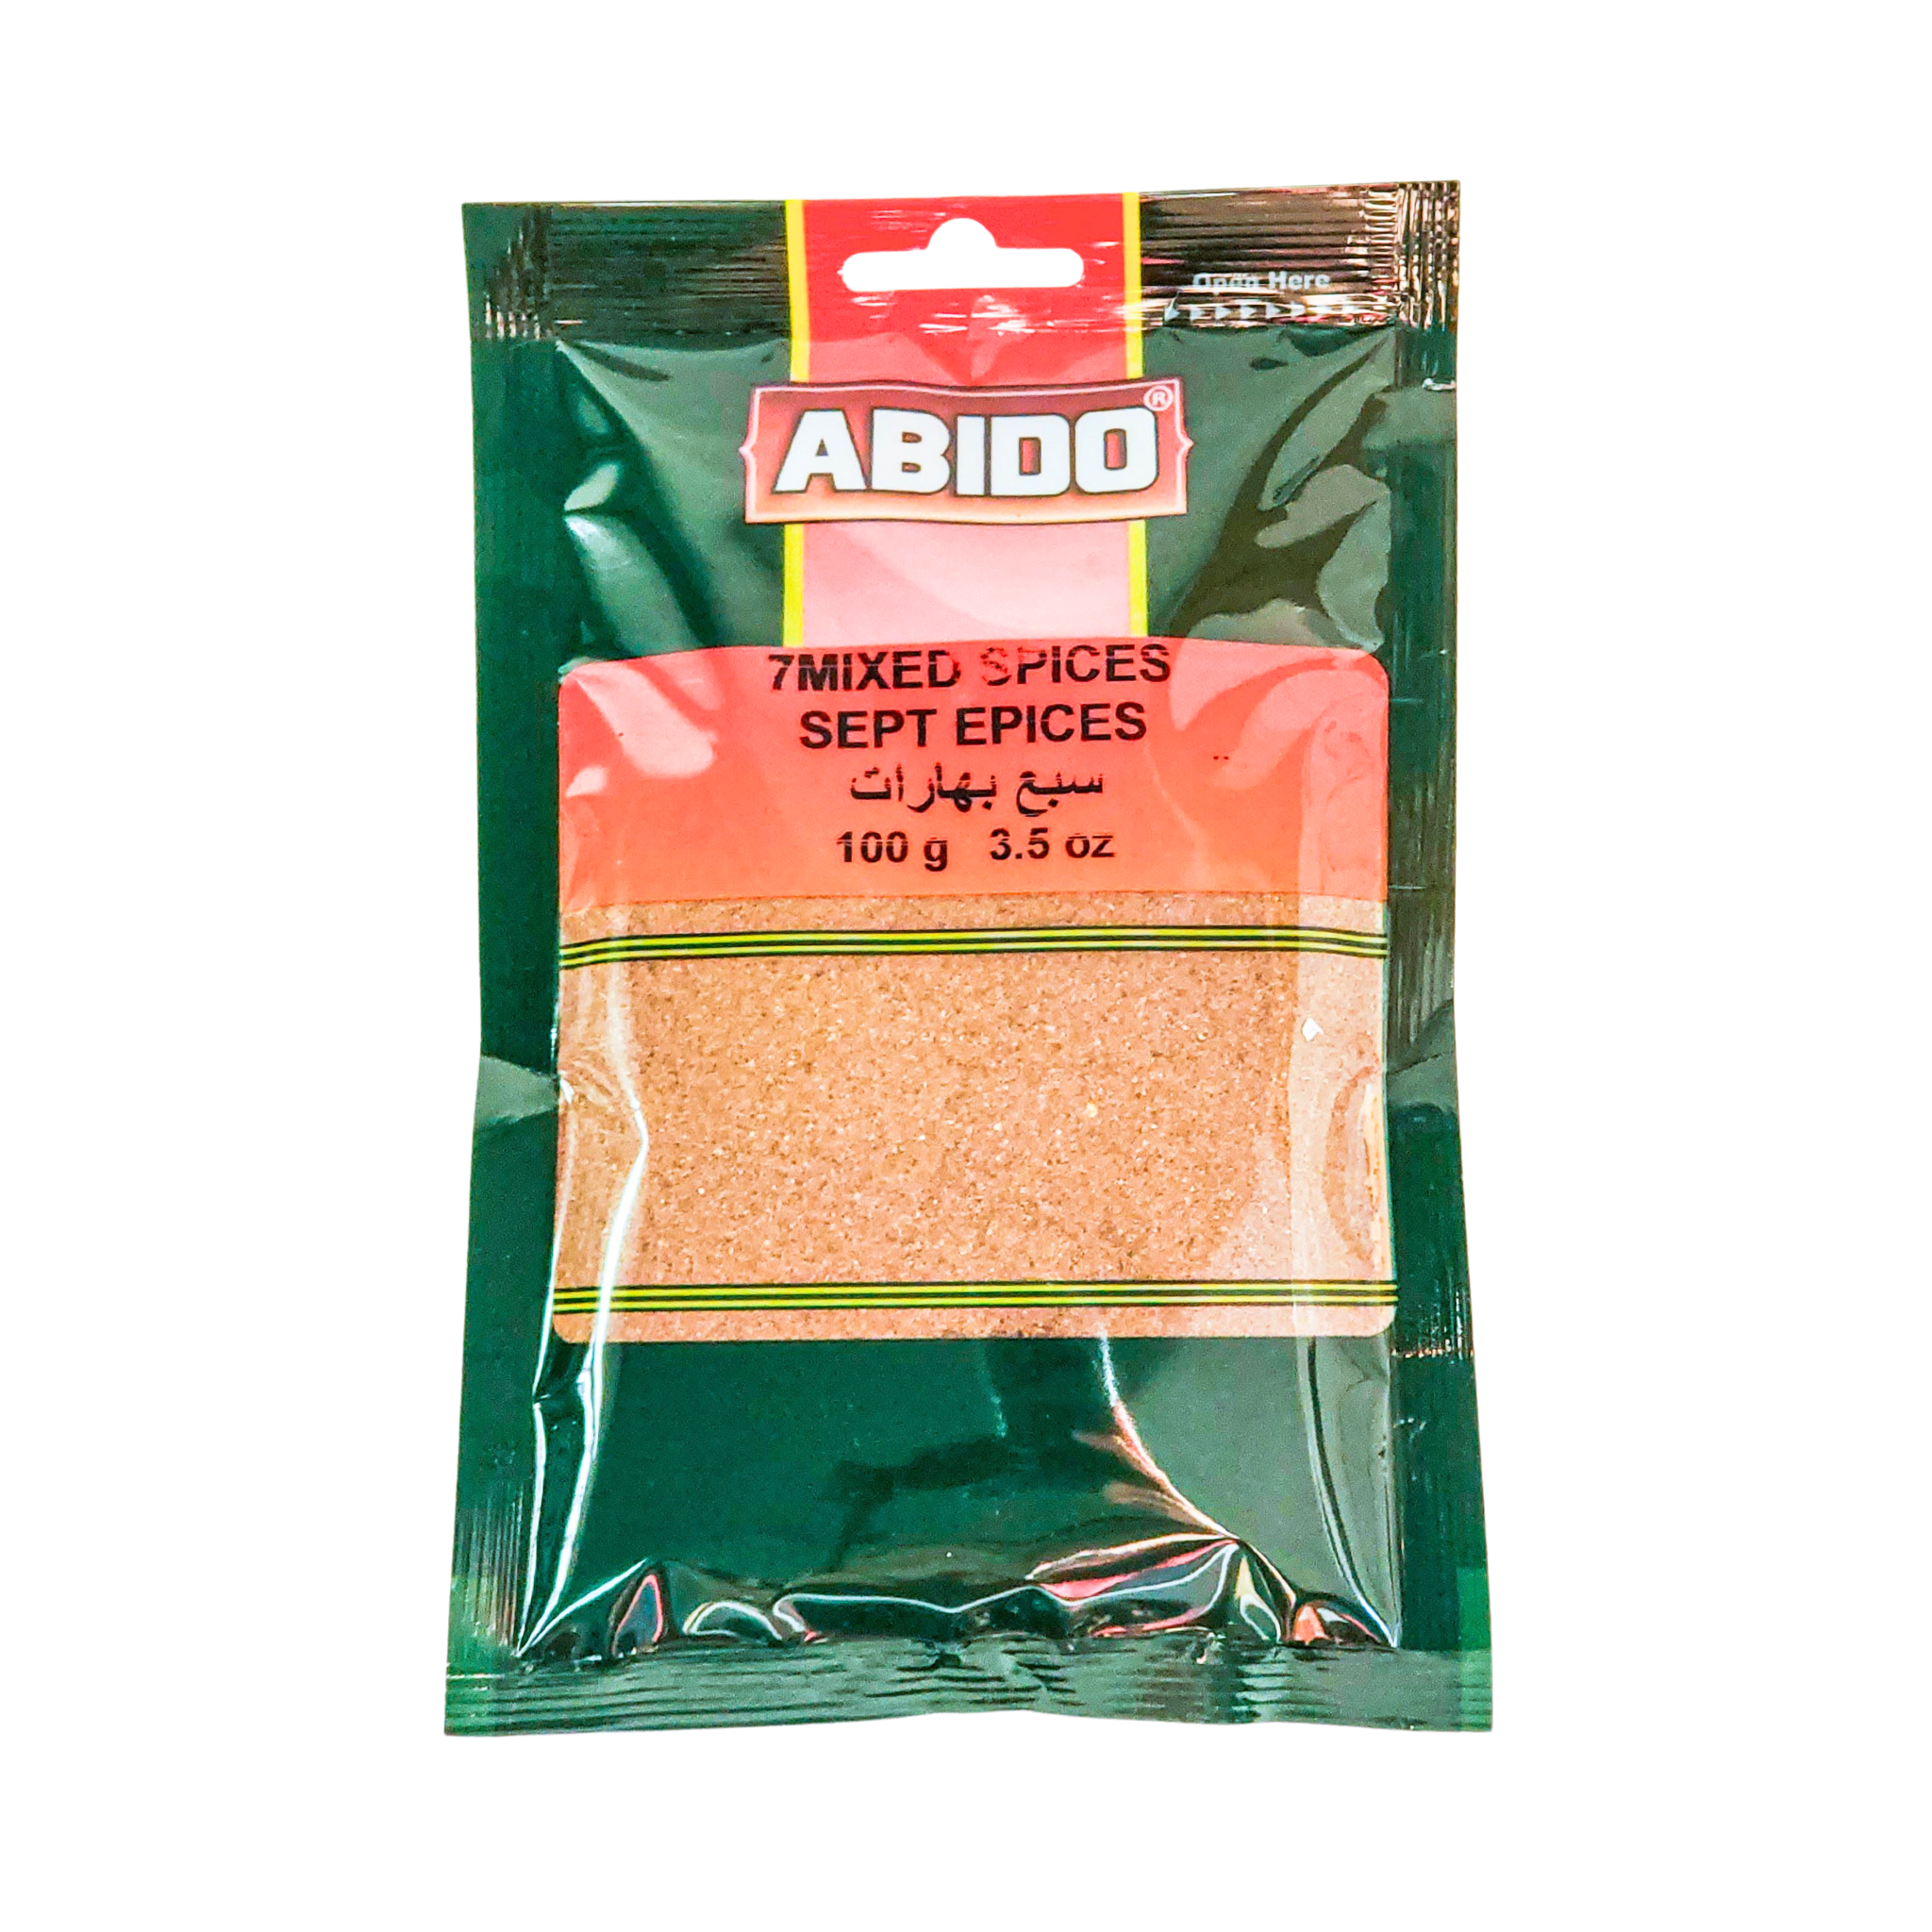 Abido 7 Mixed Spices (Sept Espices)  100g